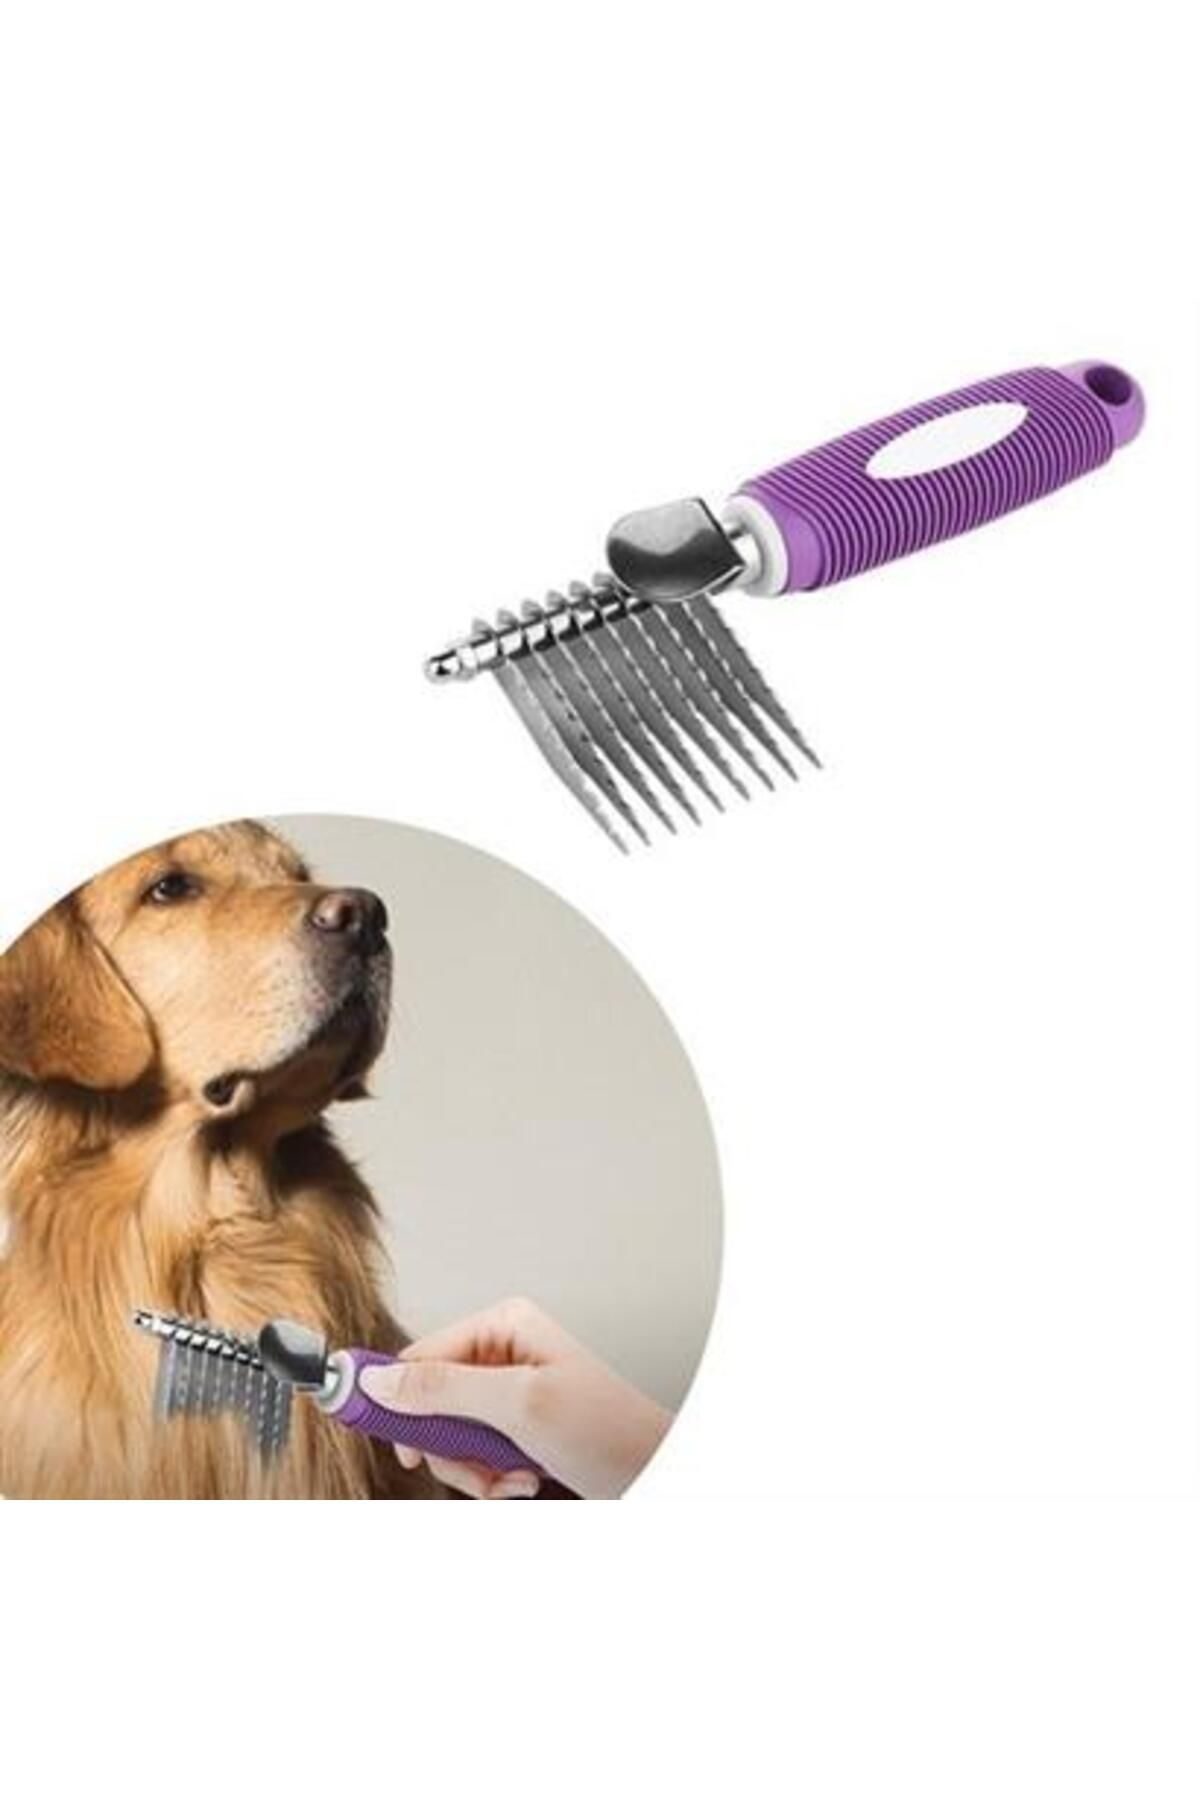 arzela ZHD Düğüm Açıcı Pet Fırçası Emniyetli Uzun ve Çelik Dişli Kedi Köpek Tüy Kıtık Açma Tarağı